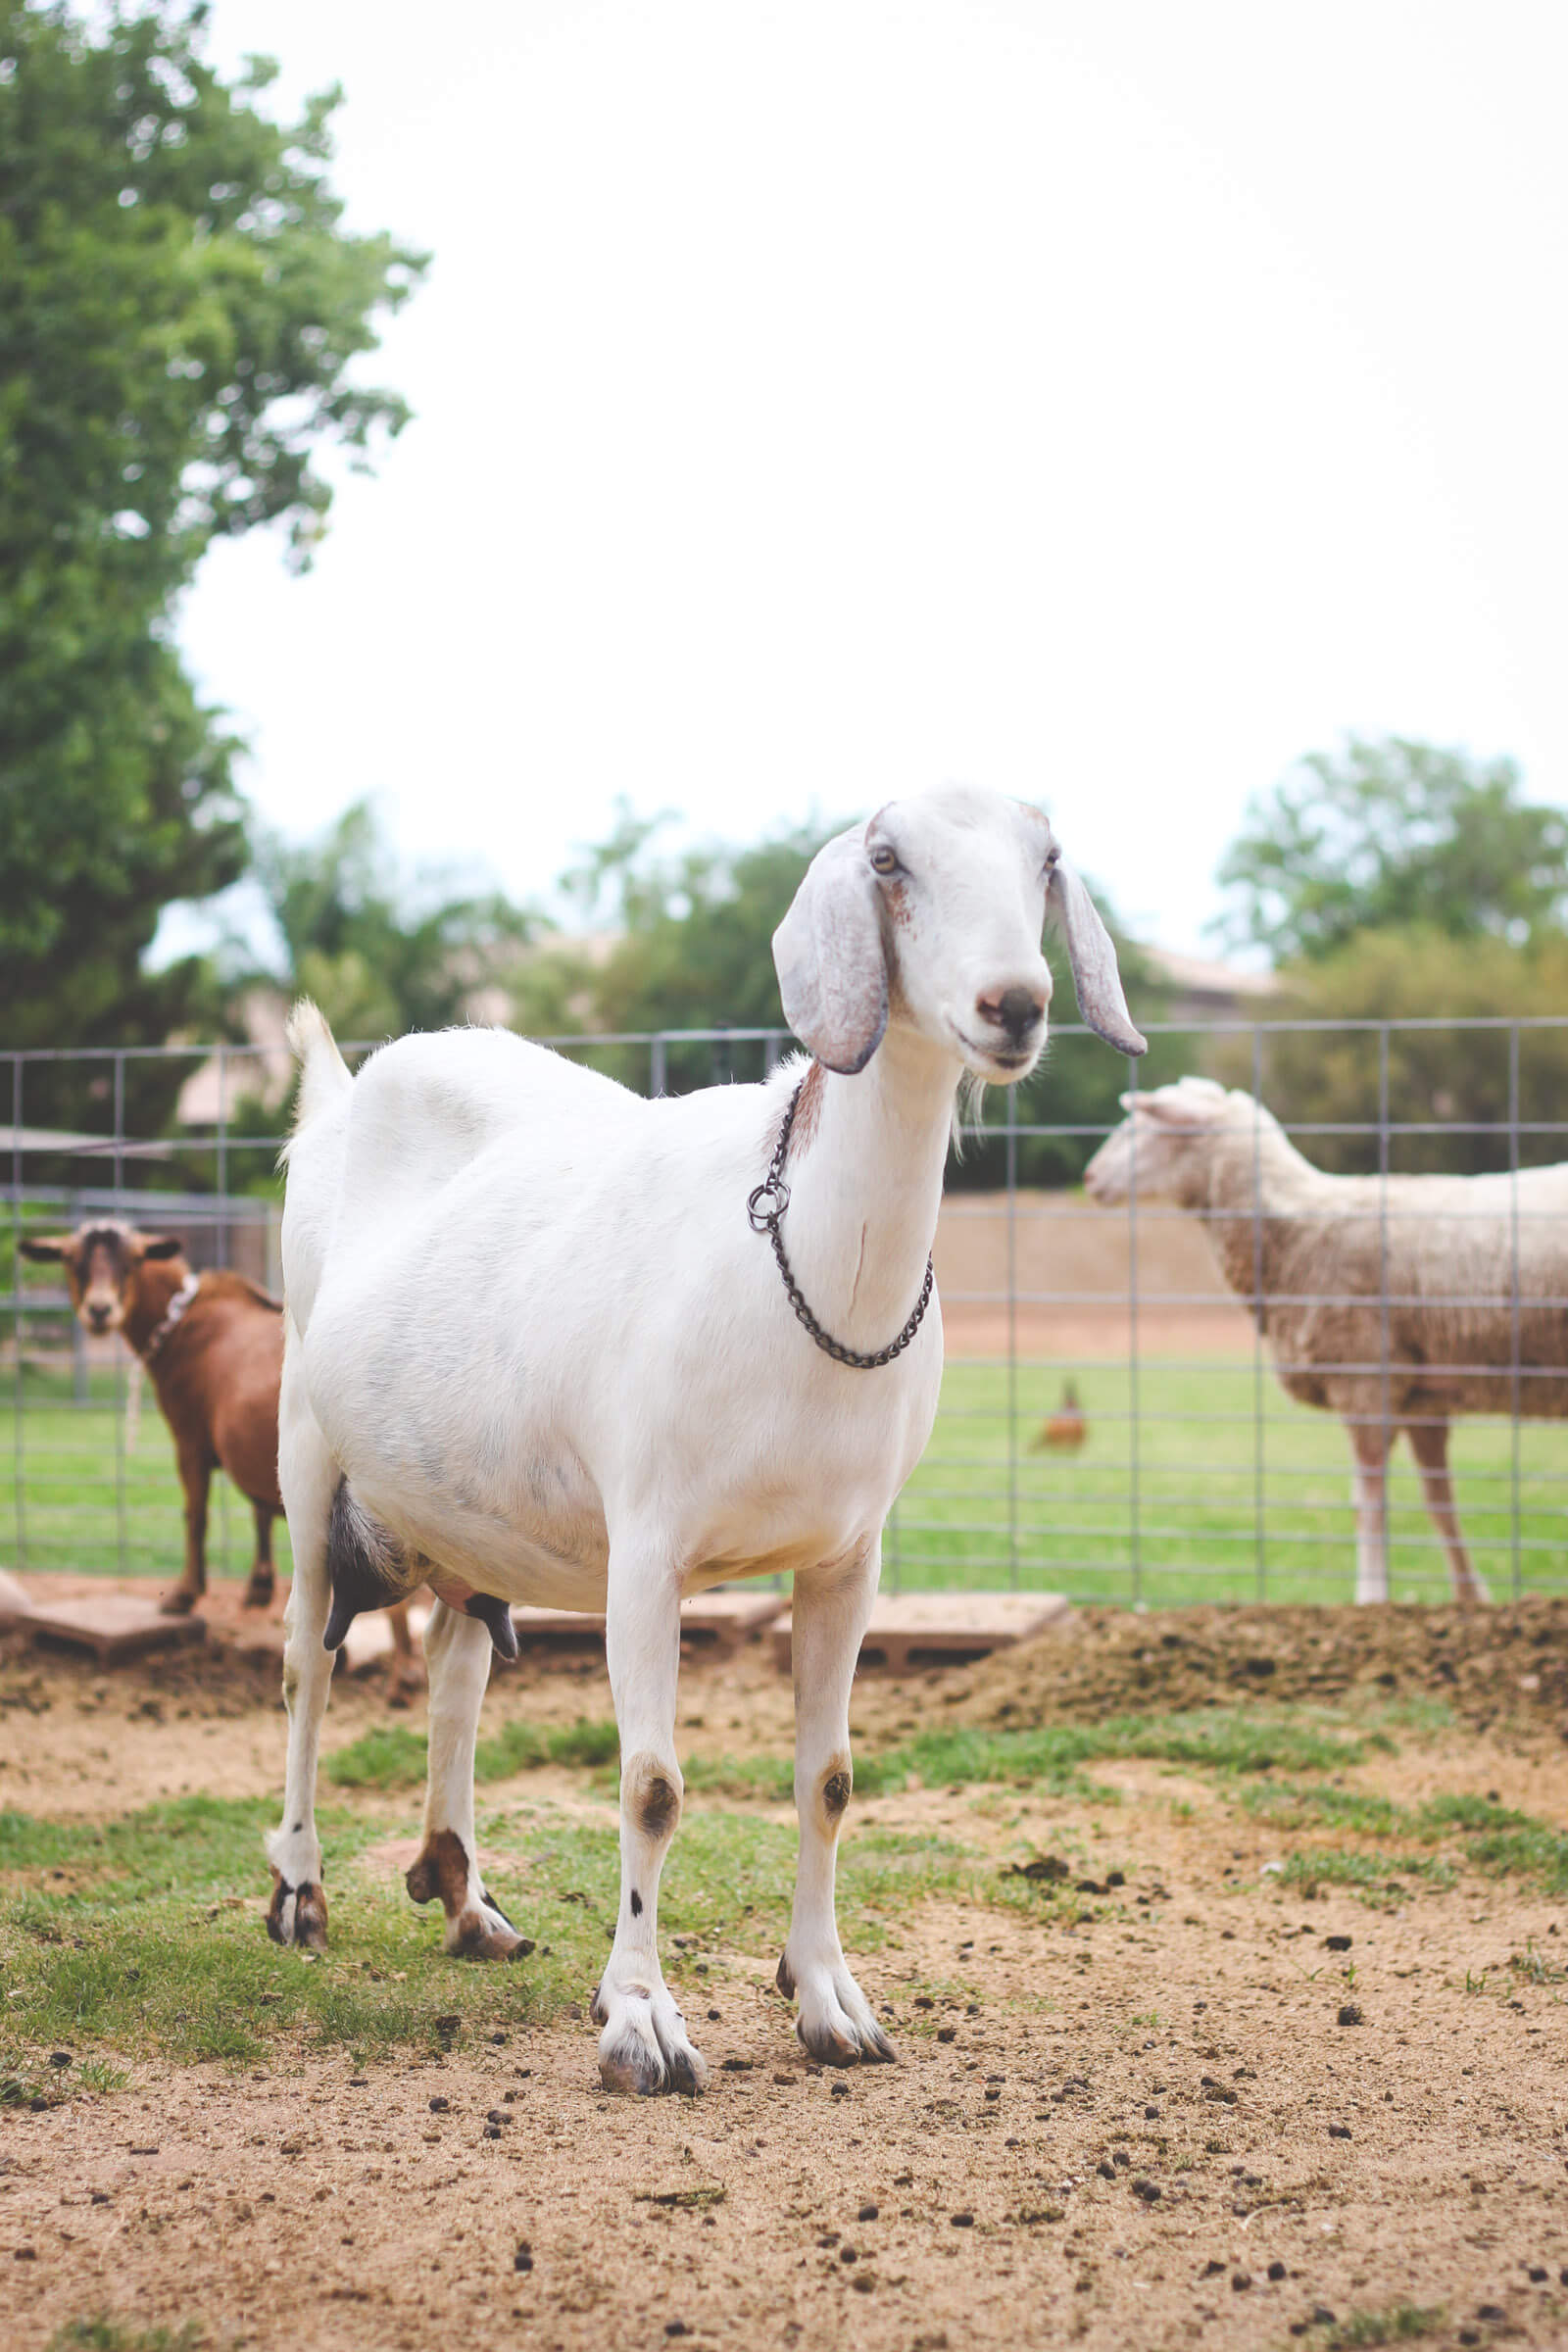 Goats in pen on urban farm.